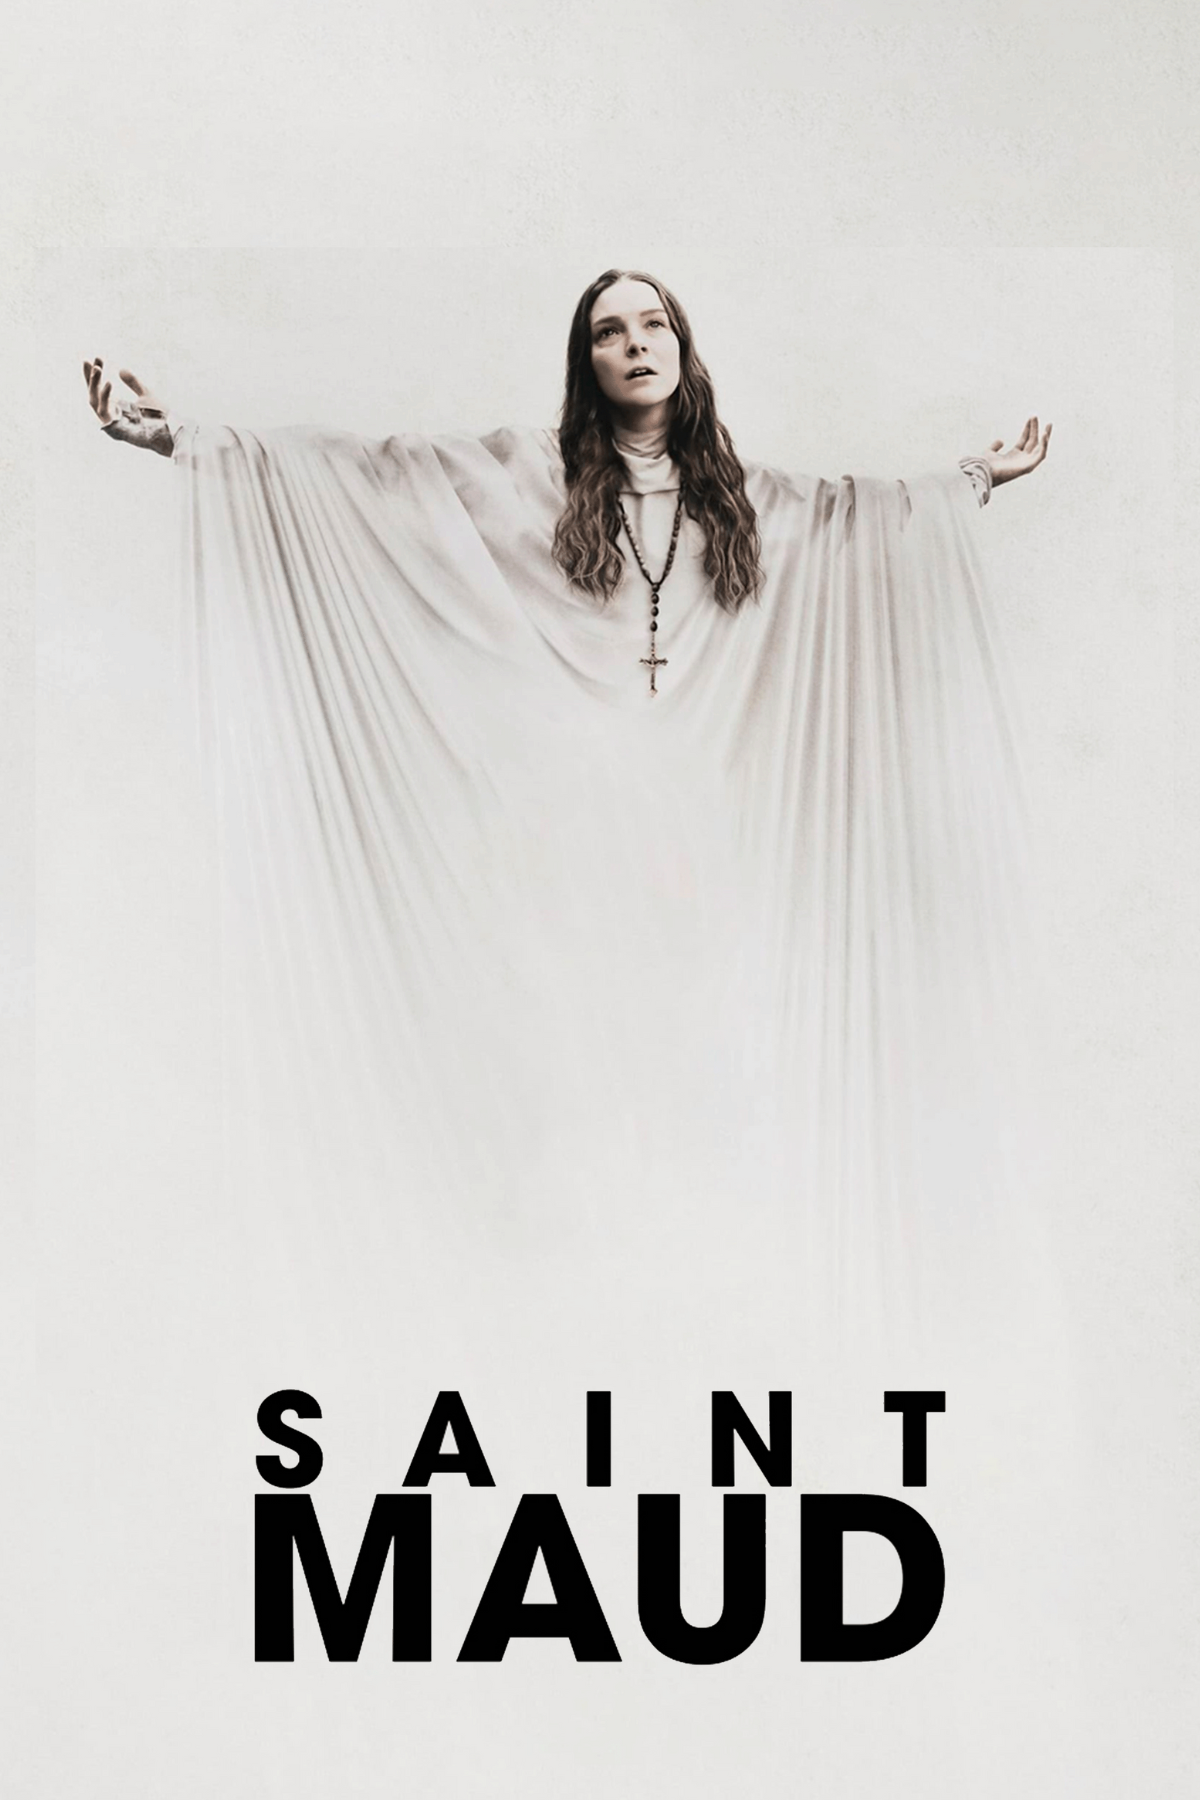 saint maud movie review 2020 a24 horror film